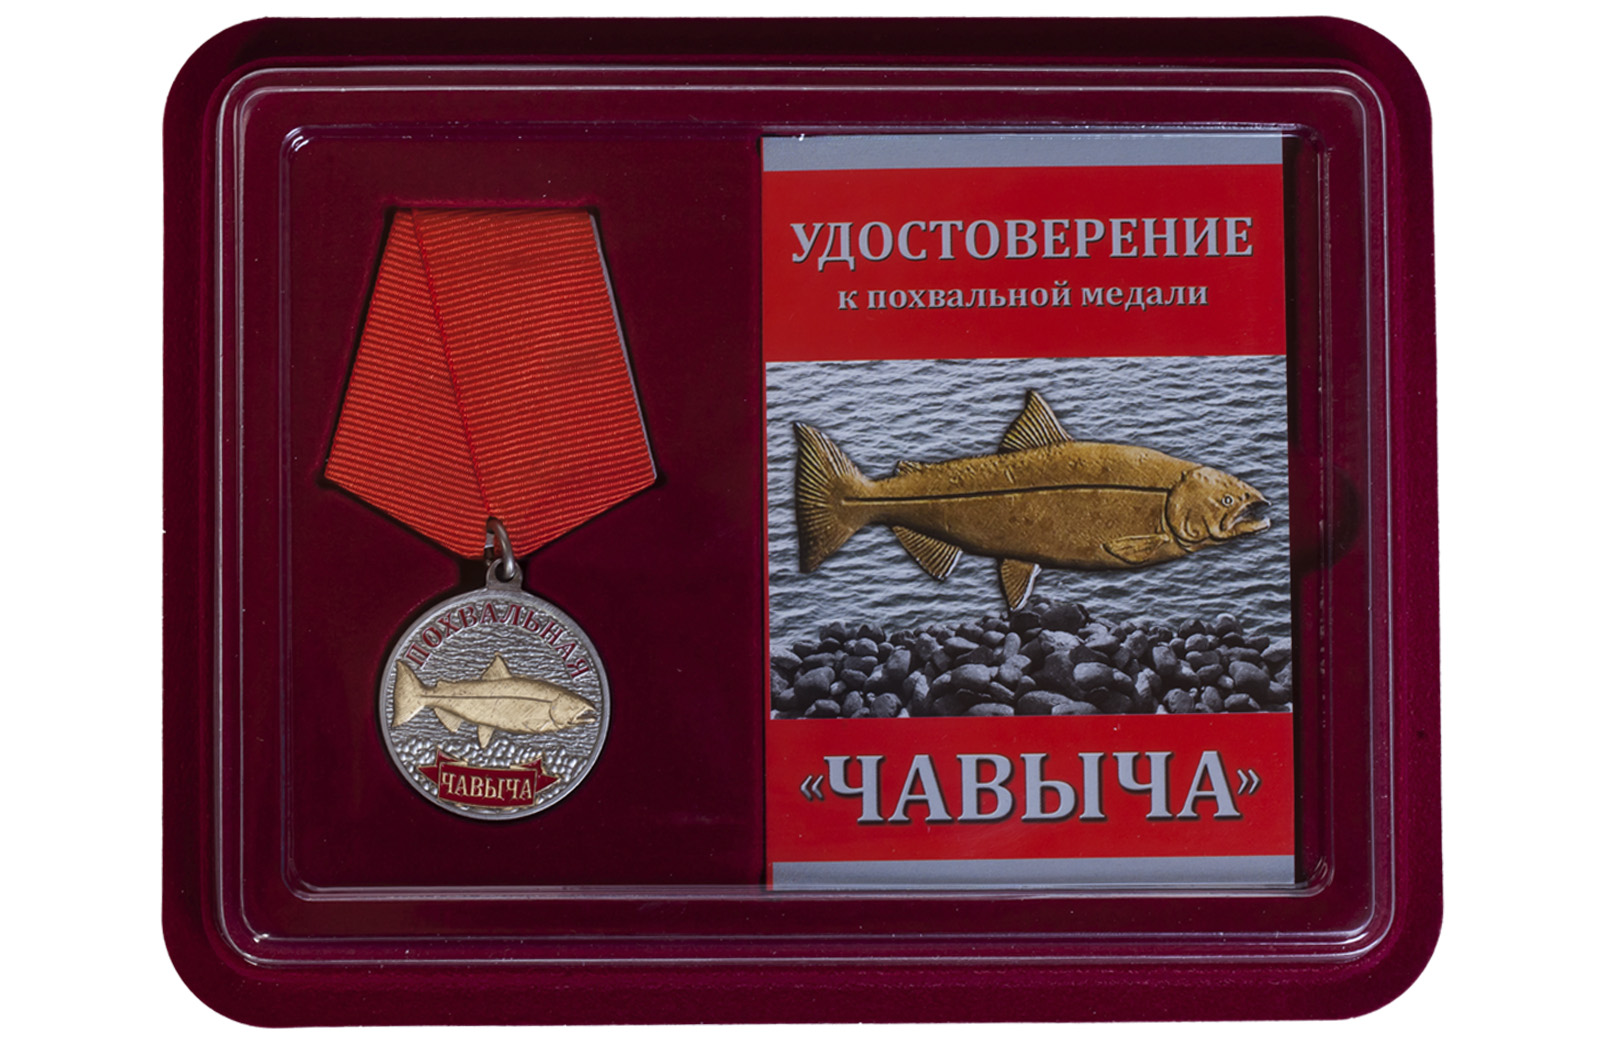 Купить подарочную медаль рыбаку Чавыча выгодно онлайн